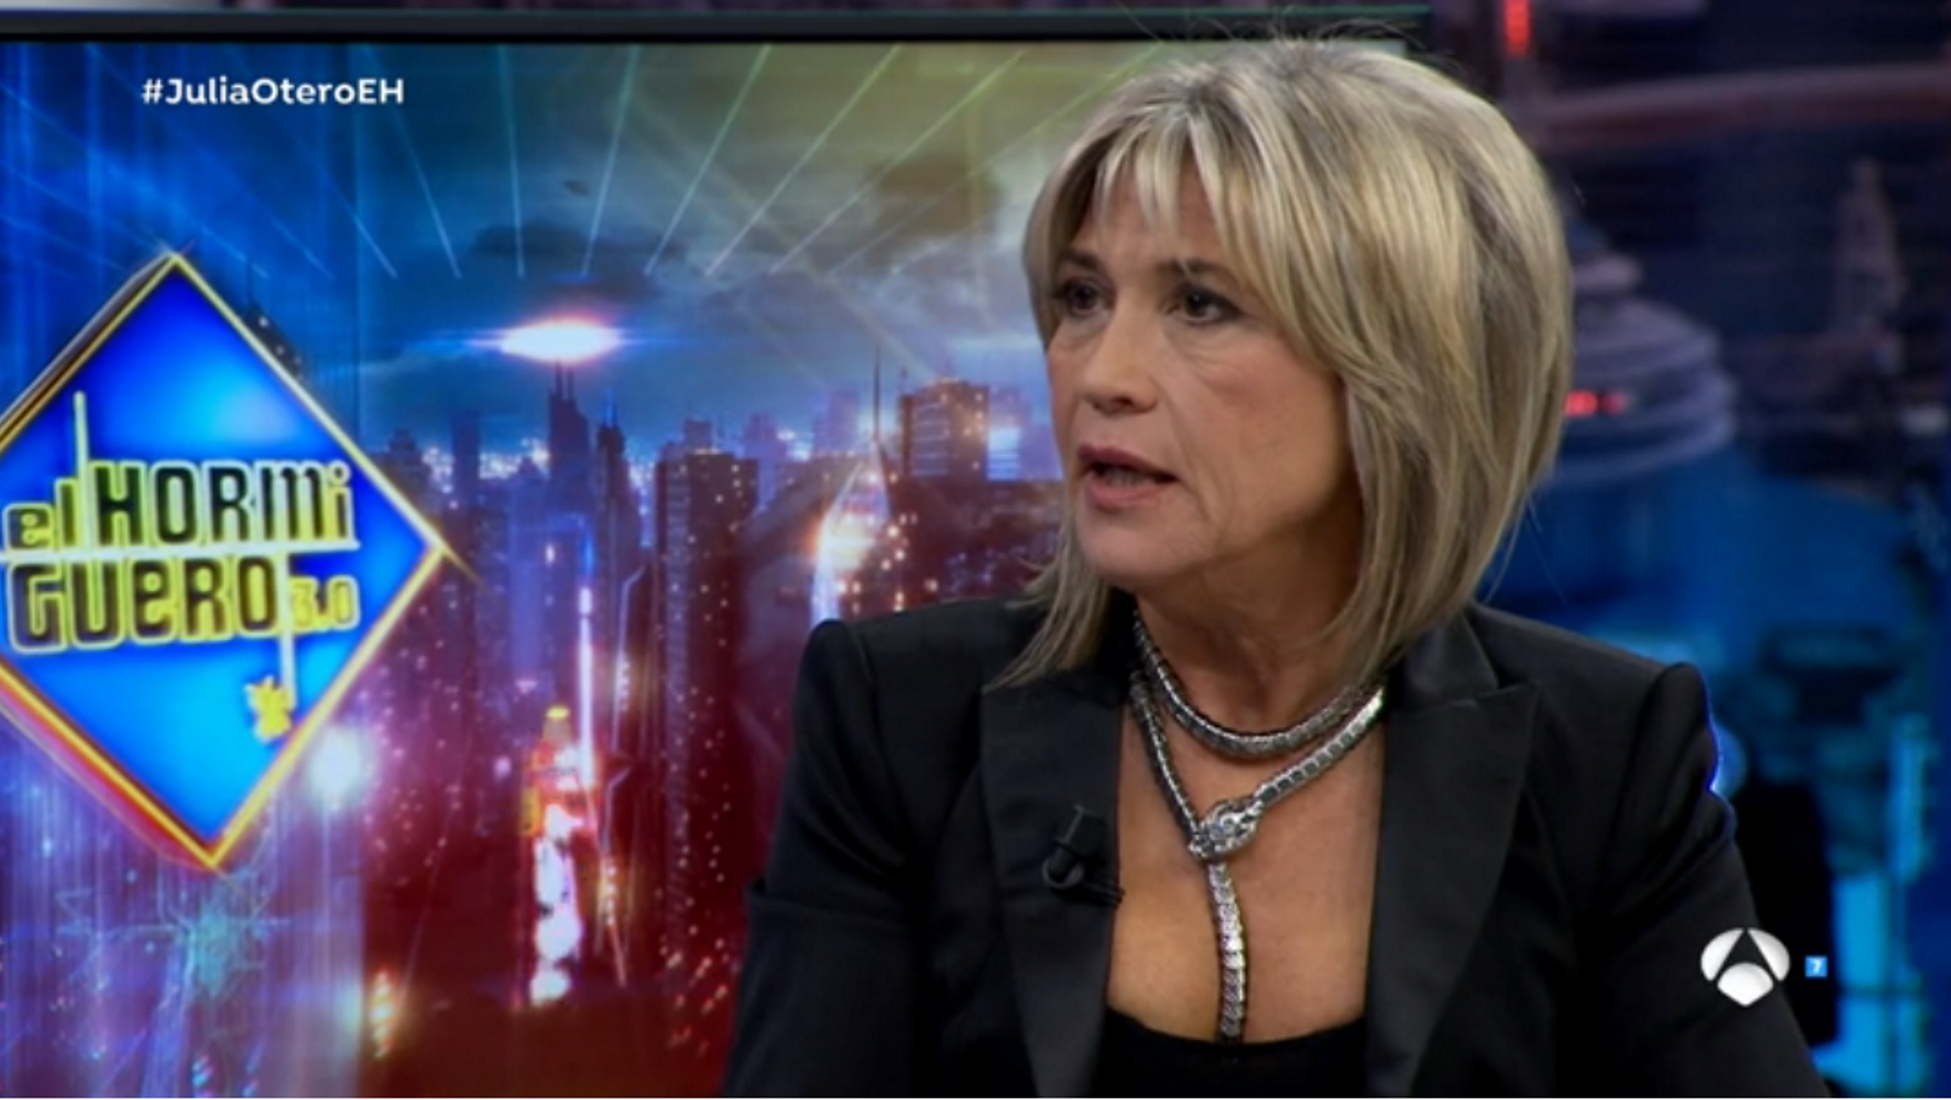 Julia Otero ataca la Generalitat: “Com que no sóc independentista, no hi compto”